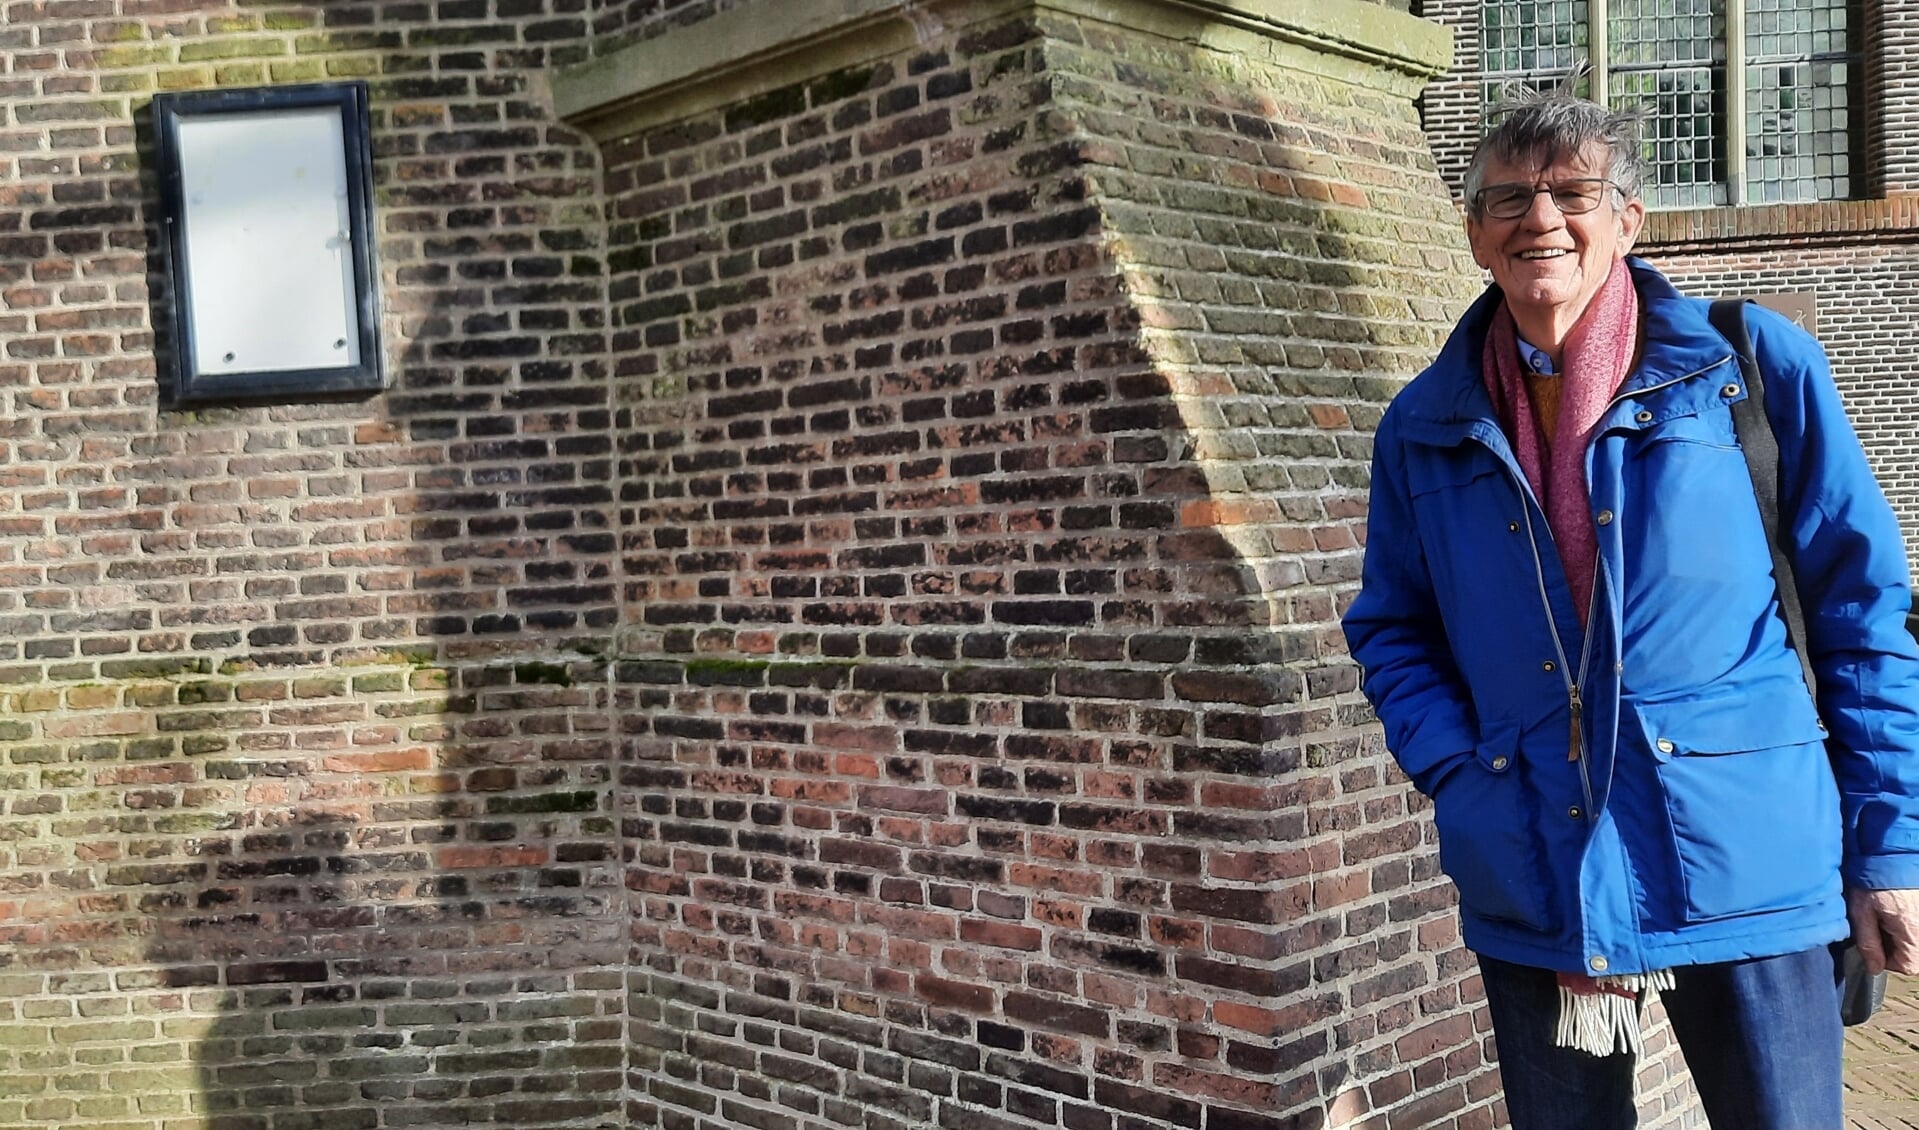 Ron Hoekstra, op een historisch en monumentale locatie, de Grote Kerk op de Markt, vraagt nadrukkelijk om meer menskracht om de Open Monumentendag voor Vlaardingen te houden. 